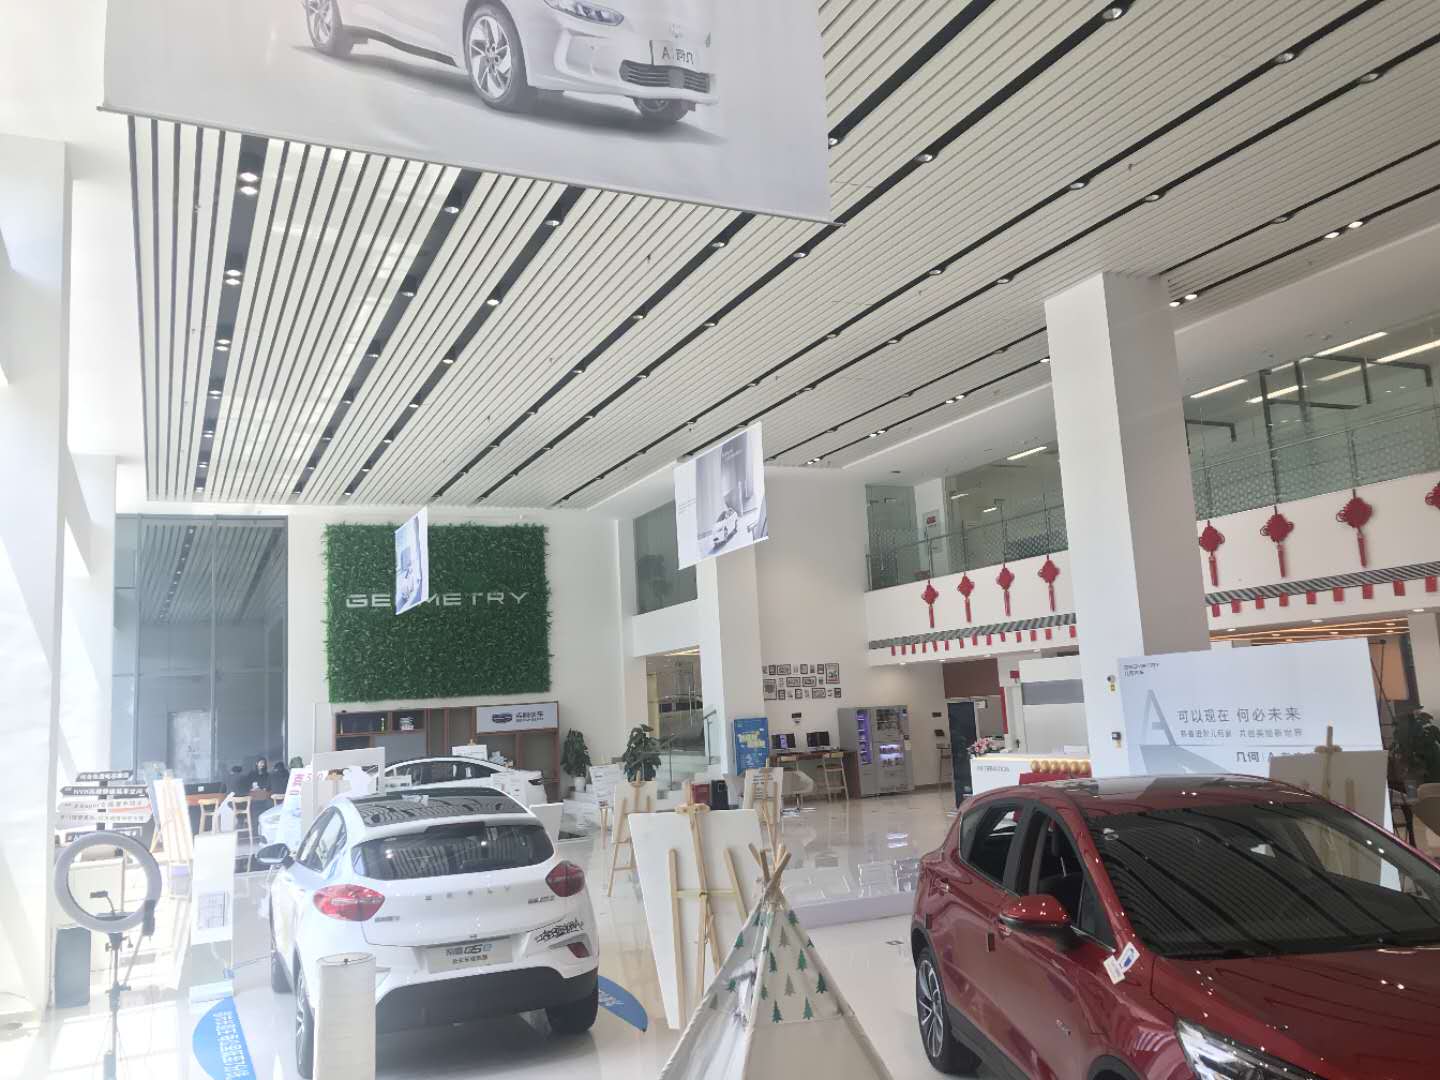 博卡联（重庆）汽车销售服务有限公司 环境照片活动图片